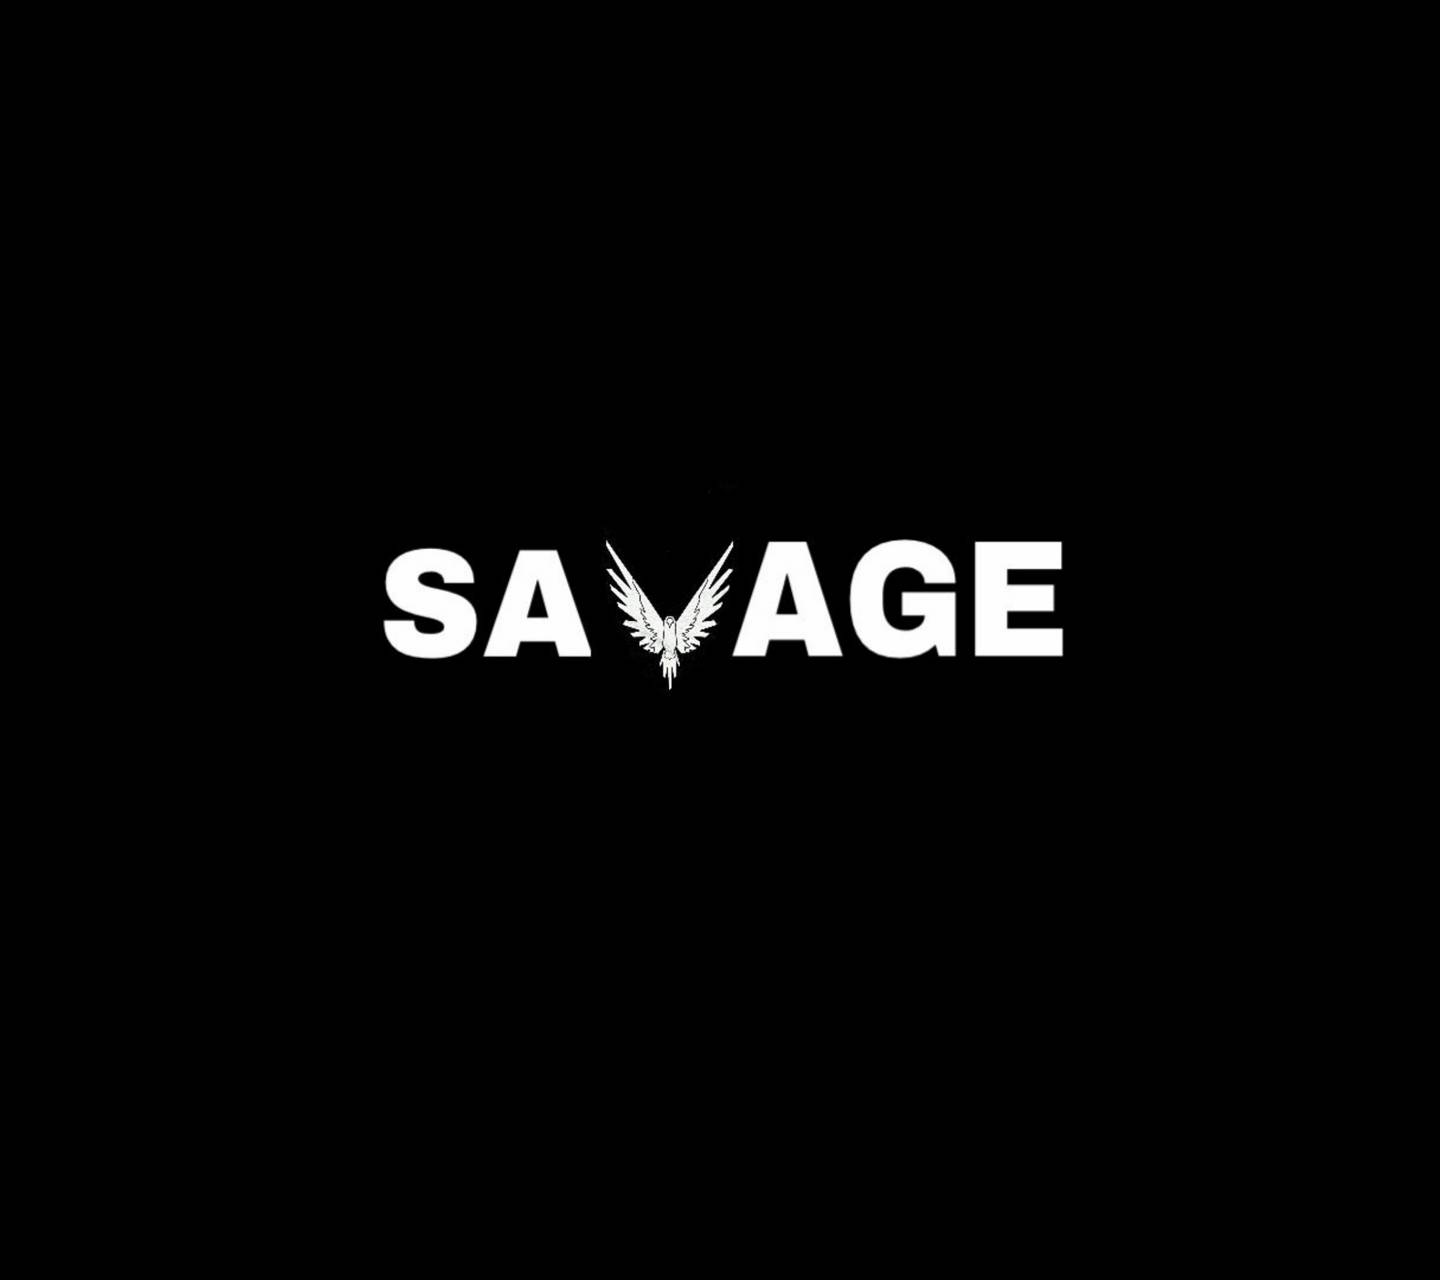 Savage Wallpaper Free Savage Background